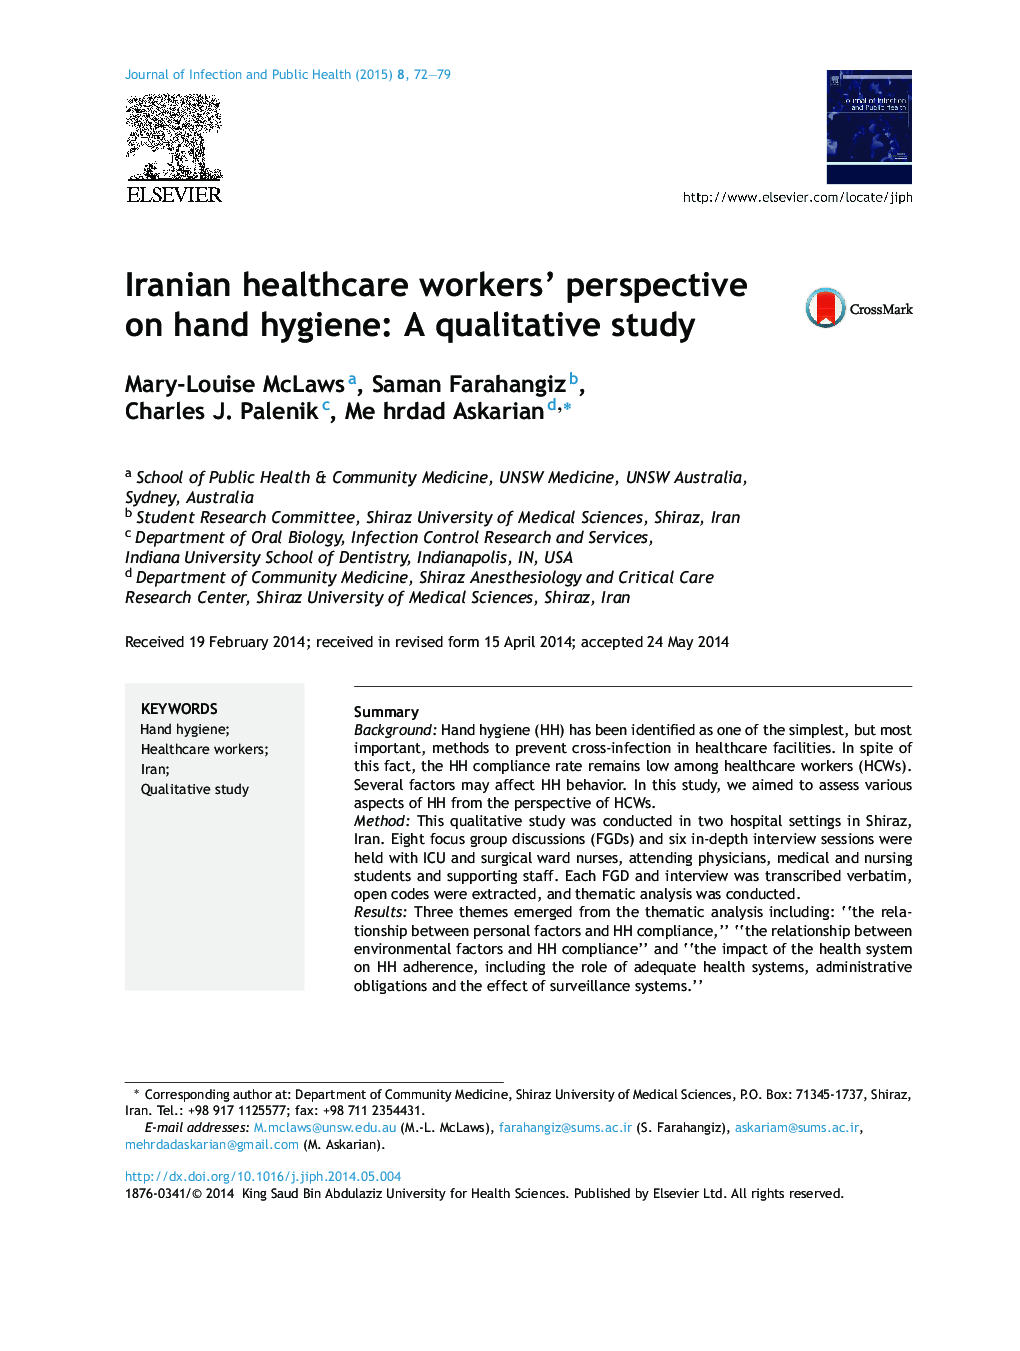 دیدگاه کارکنان مراقبت های بهداشتی ایران درباره بهداشت دست: یک مطالعه کیفی